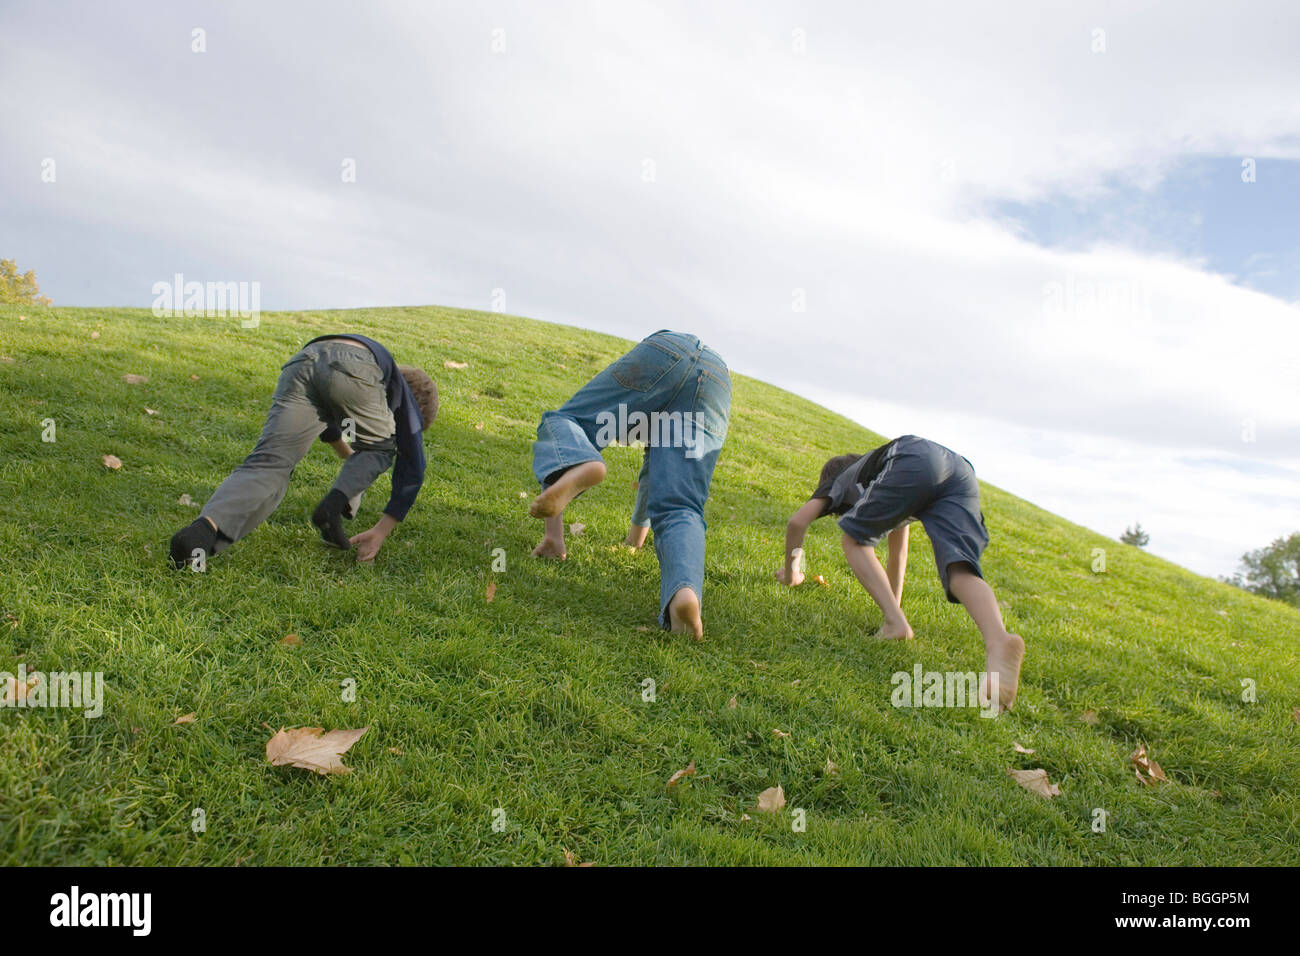 Trois garçons ayant une course, monte une colline herbeuse à quatre pattes Banque D'Images